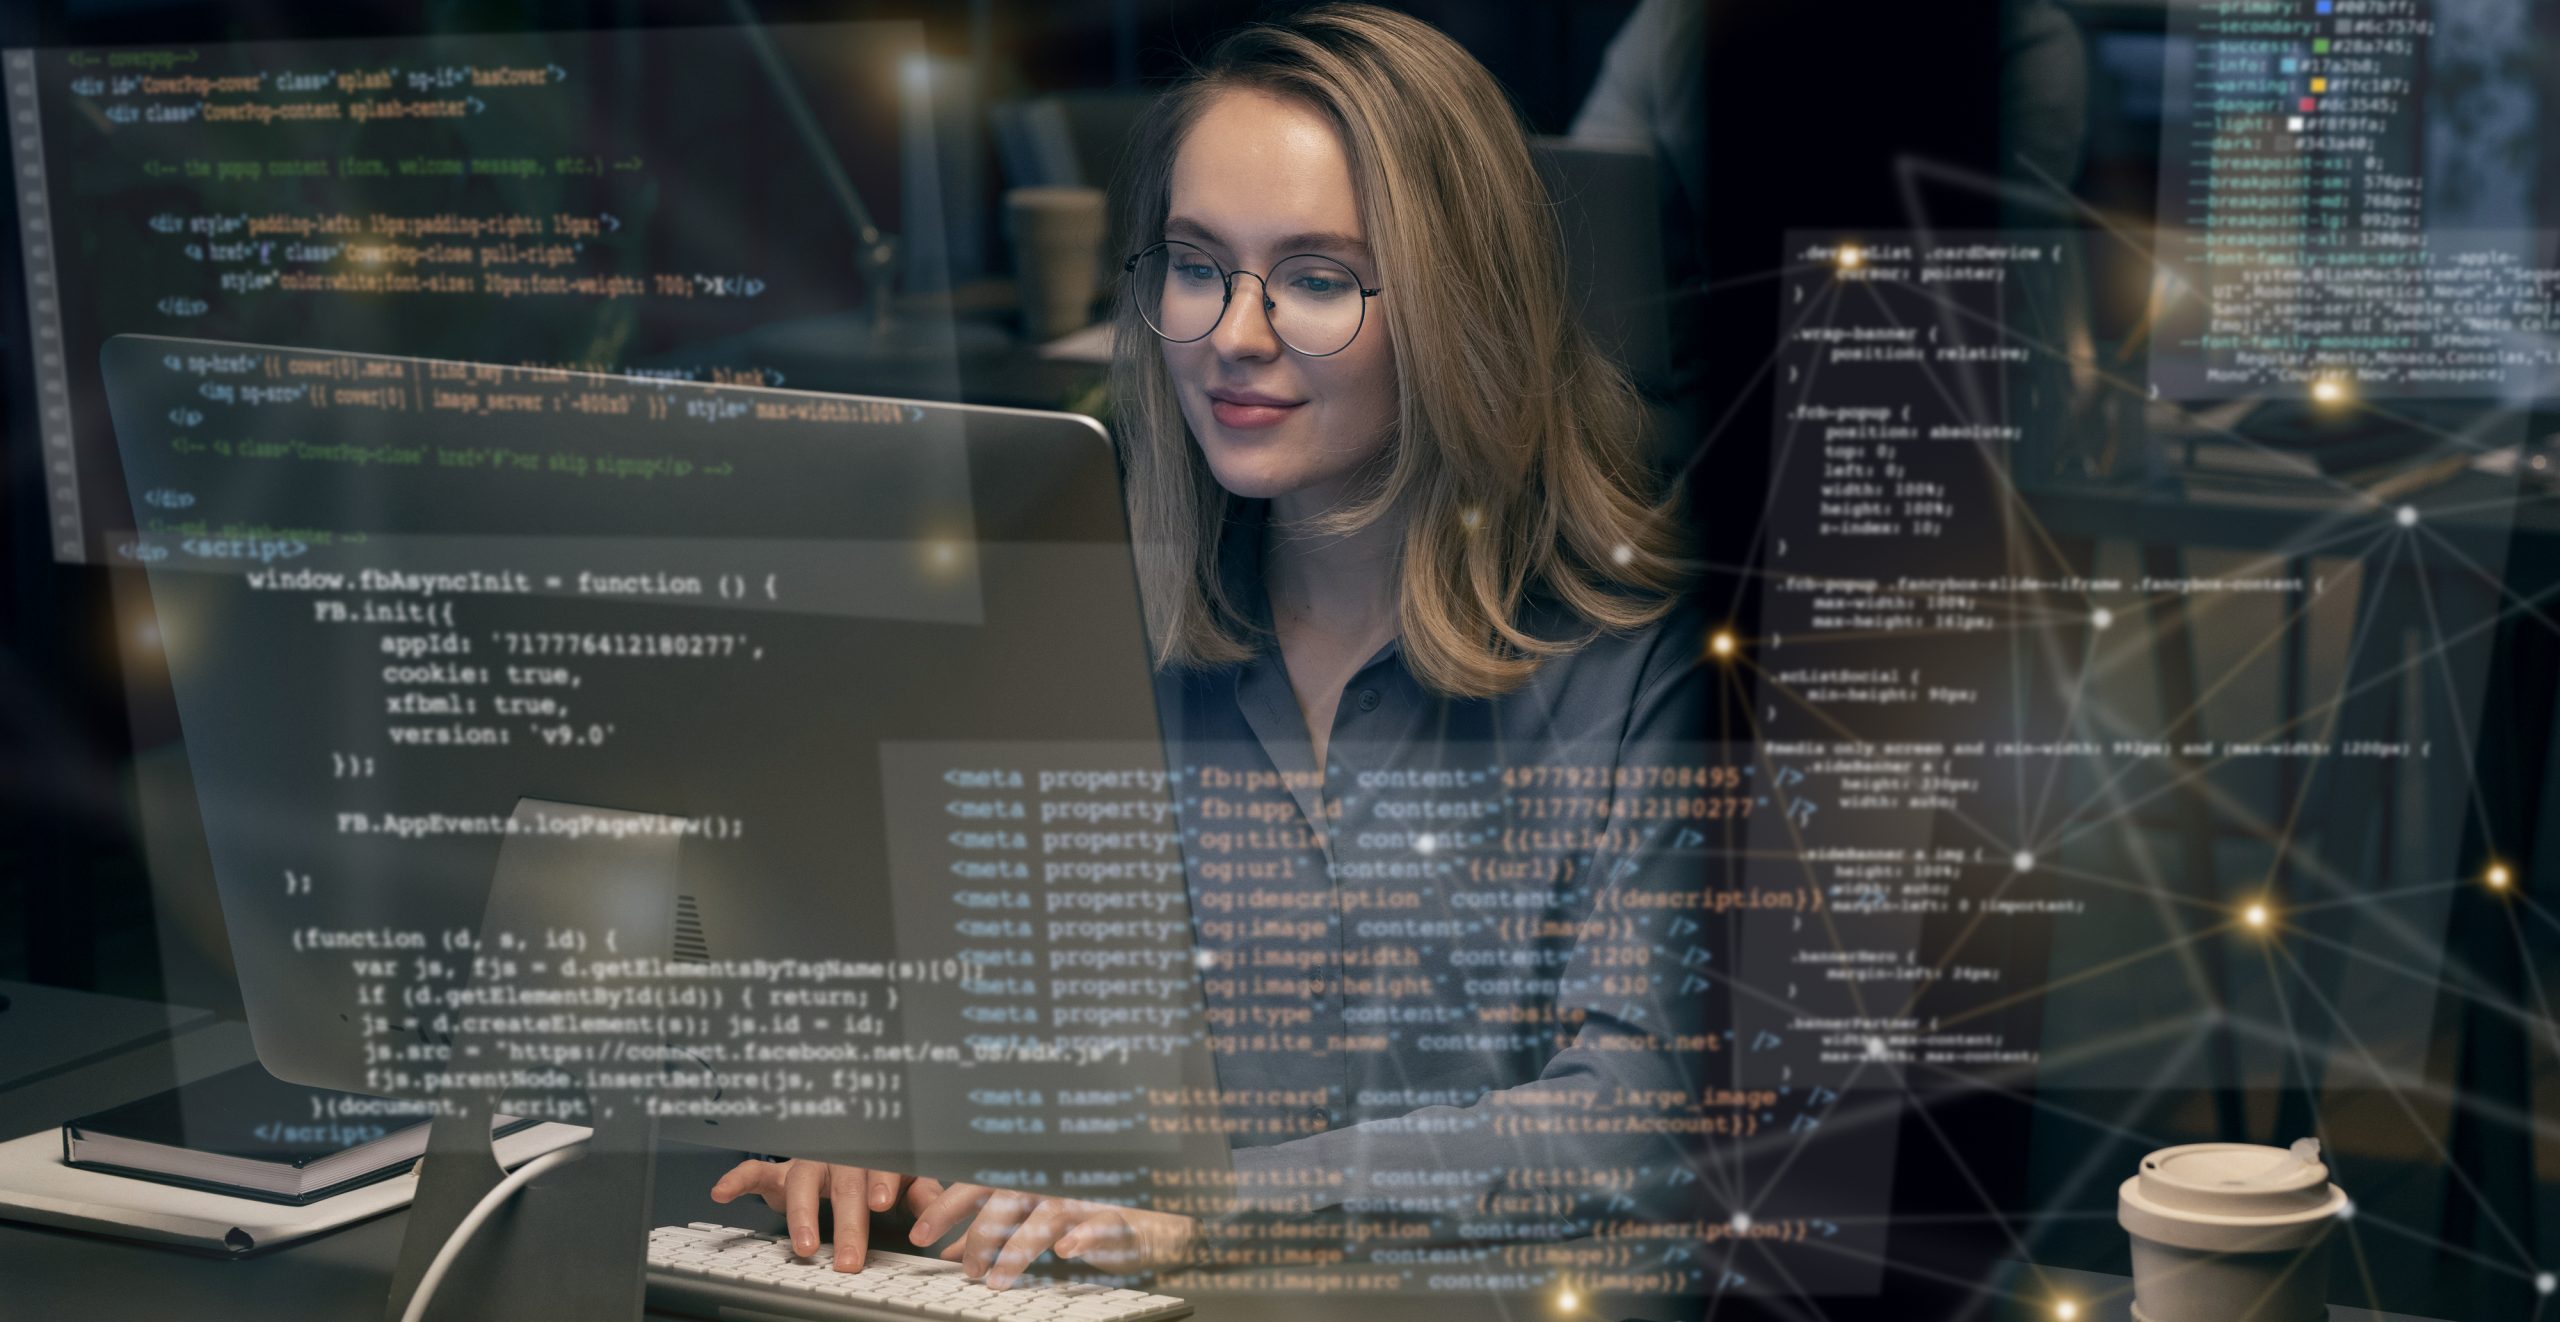 Mulher profissional de TI em escritório digita em um computador. Sobre a imagem, códigos de programação sugerem que ela está trabalhando na implementação de um software BPMS.